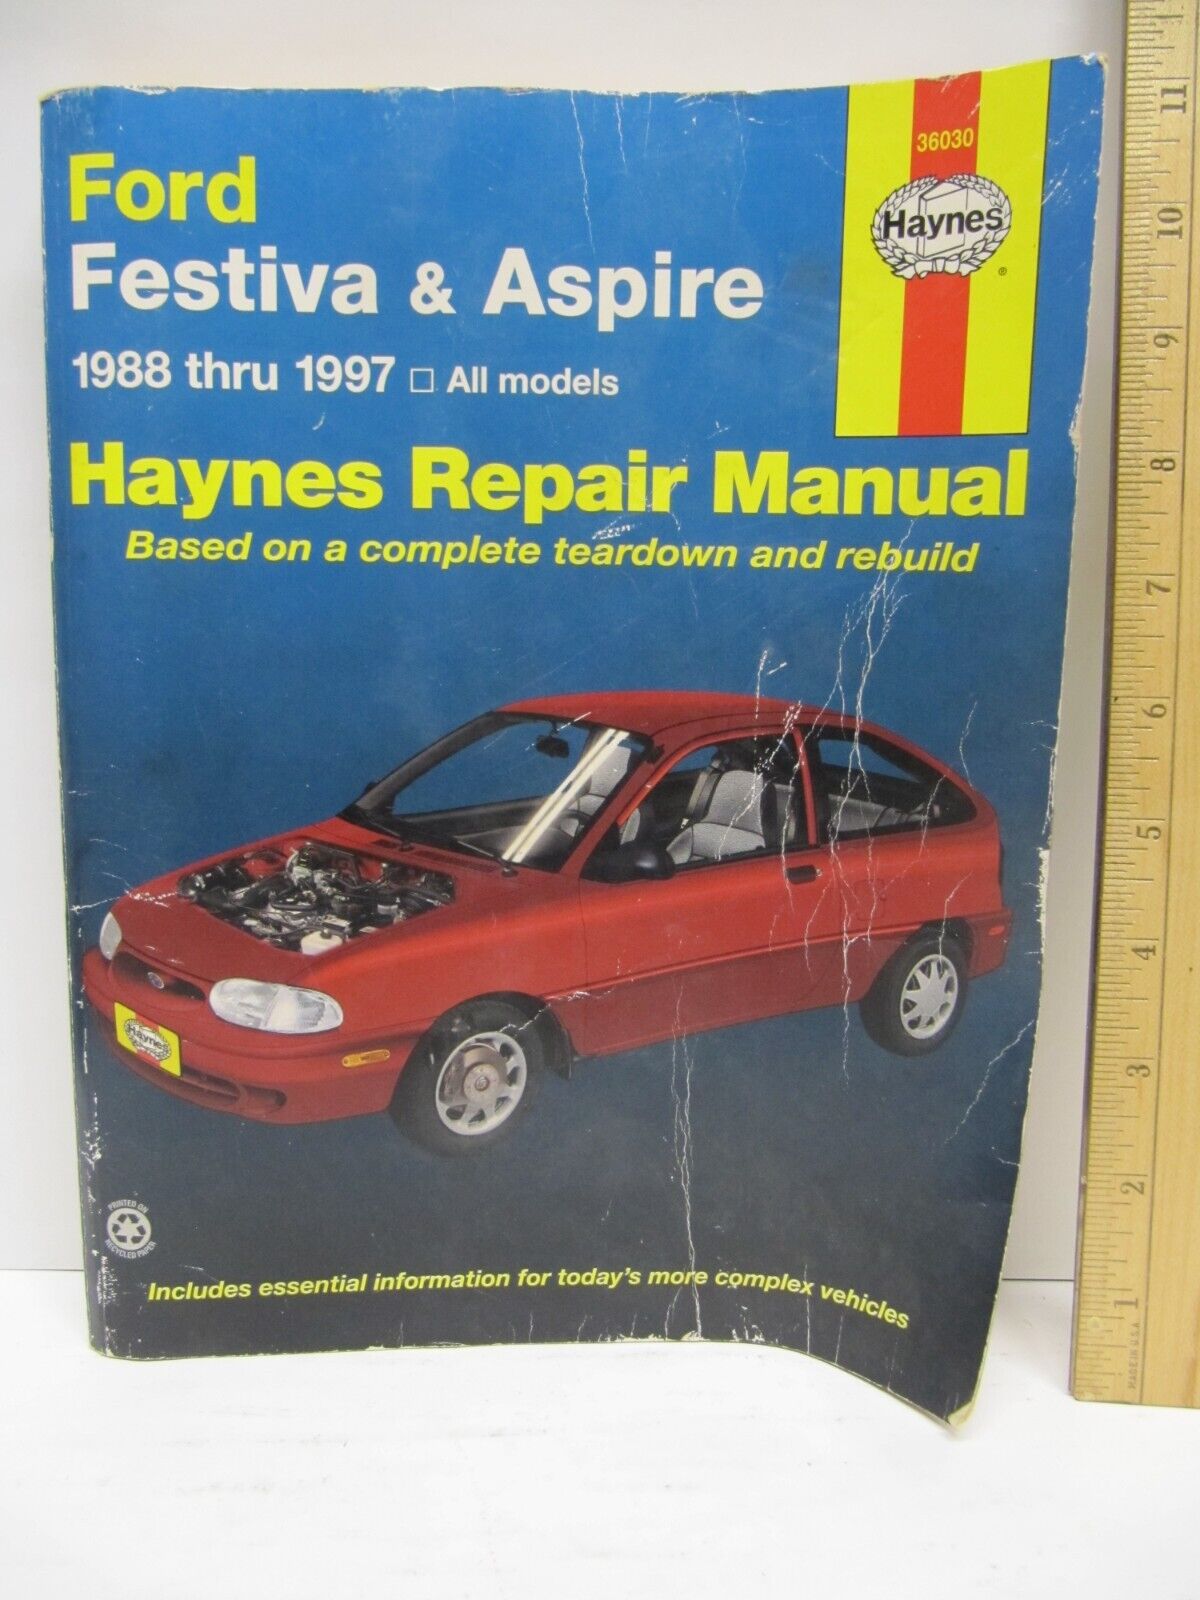 Repair Manual Haynes 36030 fits 1988-1997 Ford Festiva & Aspire